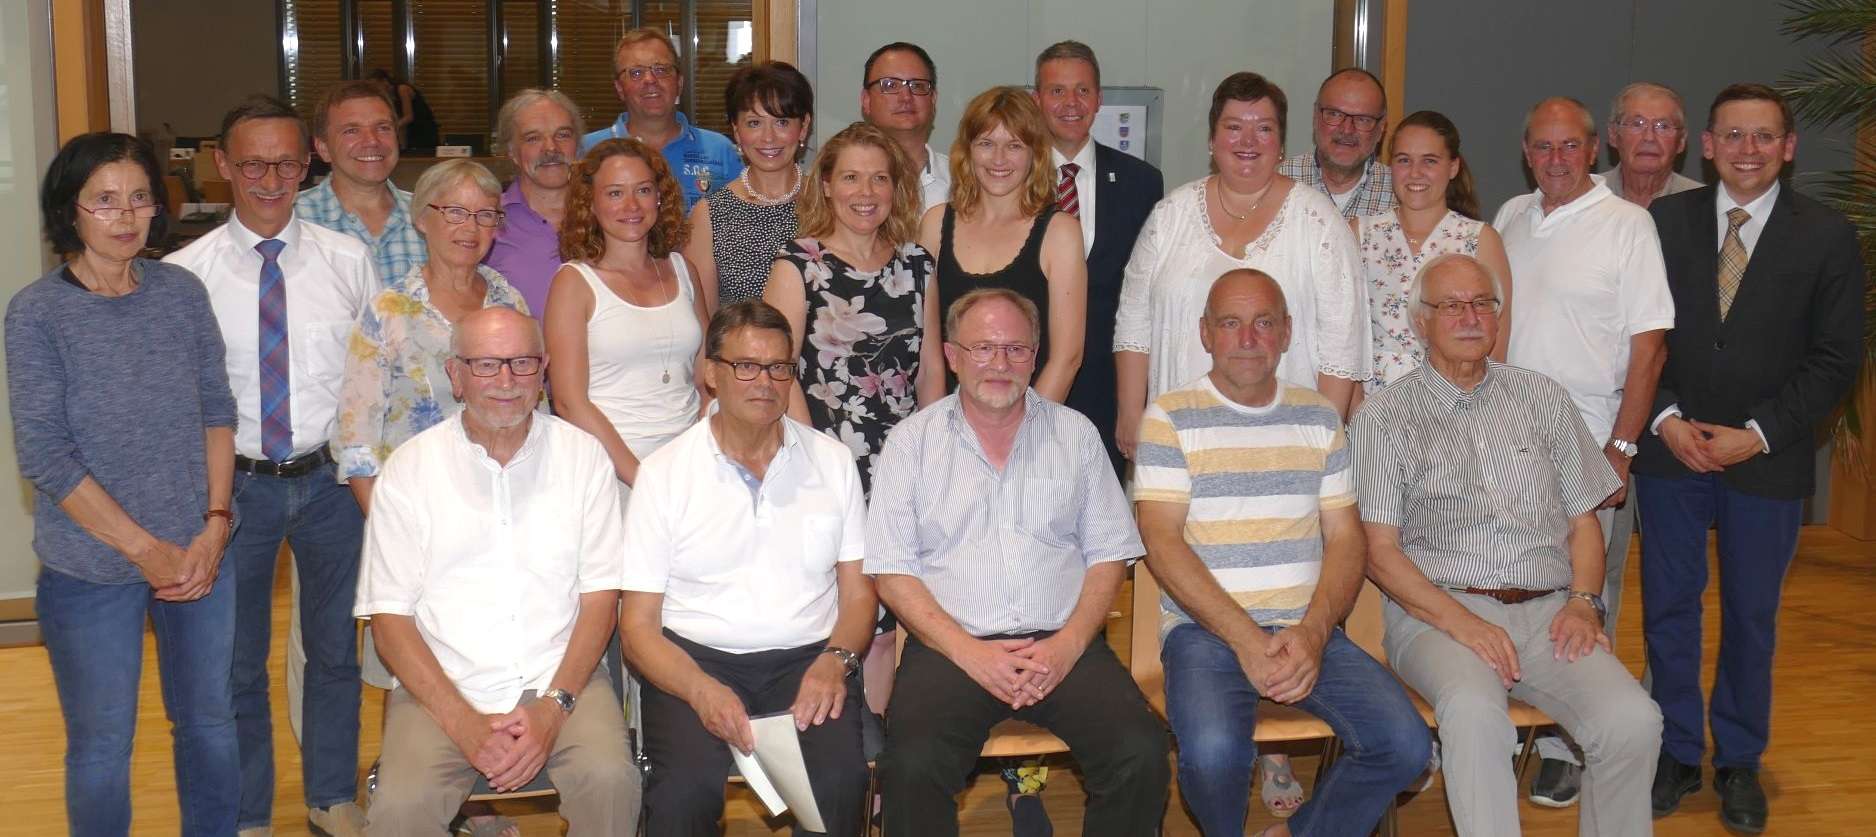  Der 20. Leimener Gemeinderat bei der konstituierenden Sitzung am 25. Juli 2019 (Foto: Internetzeitung LeimenLokal / Uthe) 